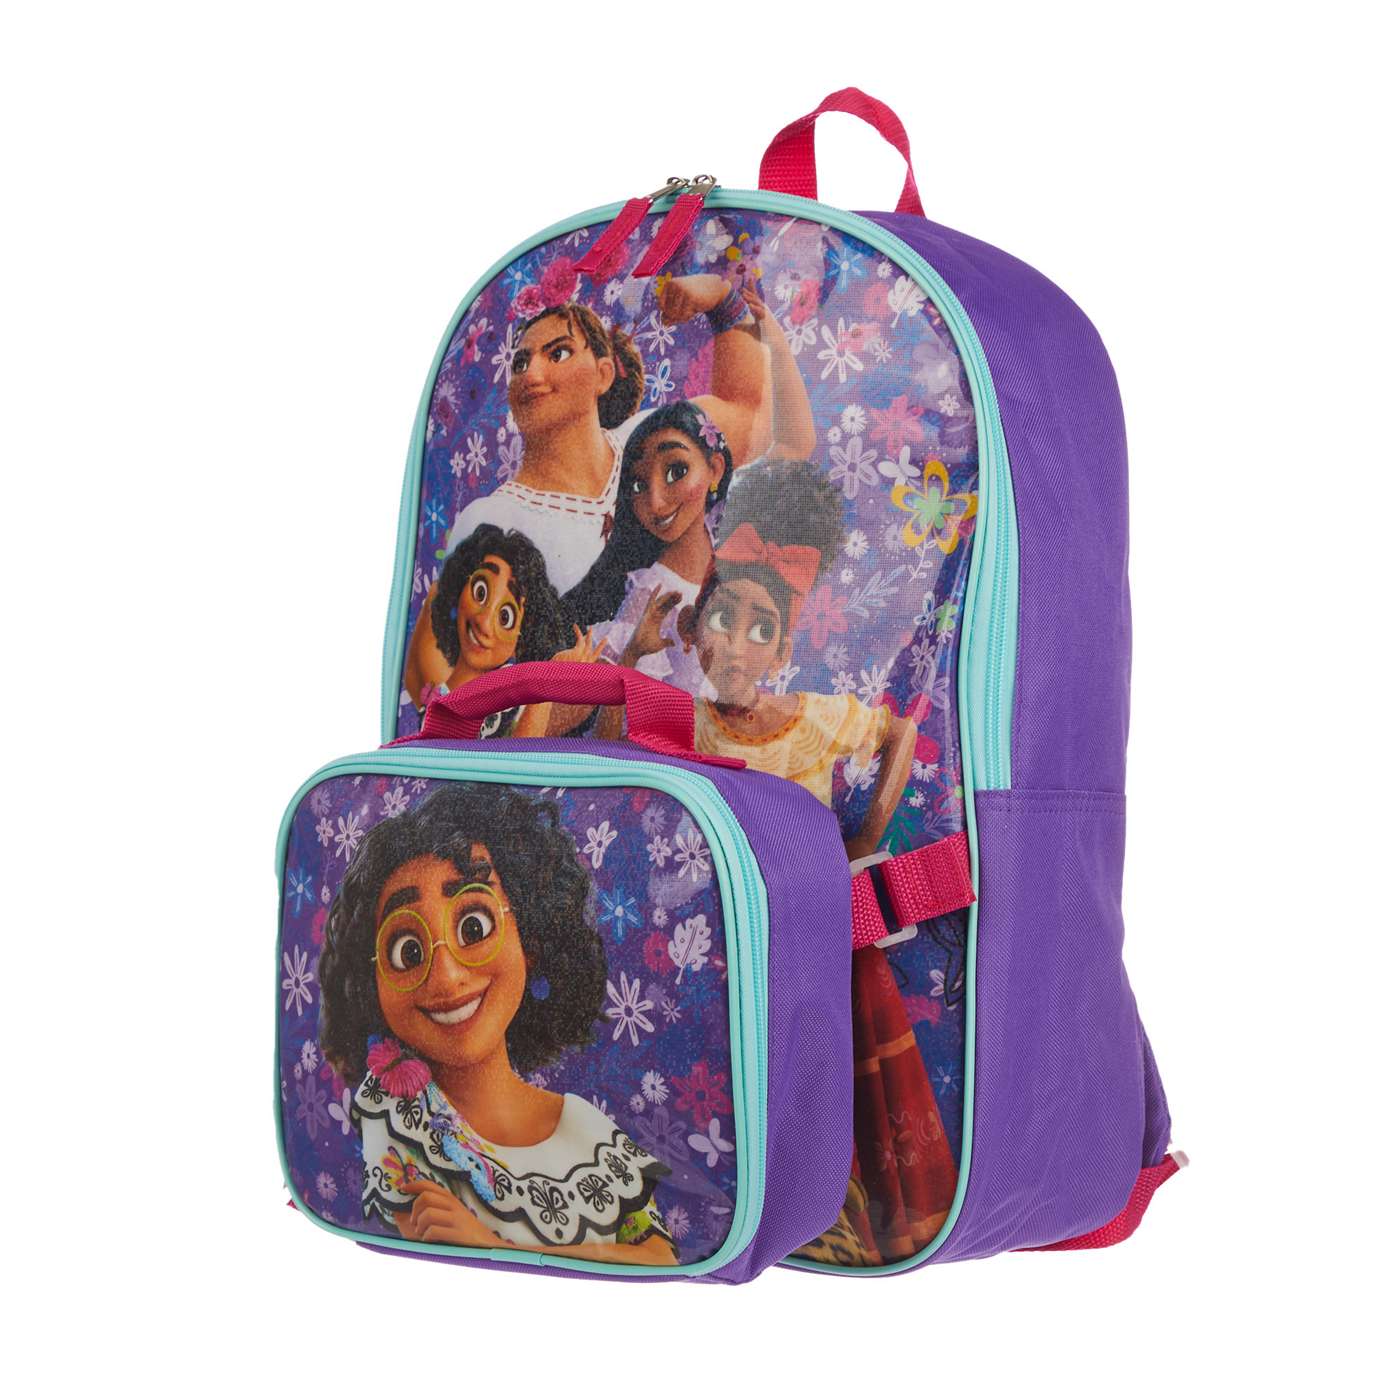 Disney Encanto Backpack & Lunch Bag Set; image 2 of 4